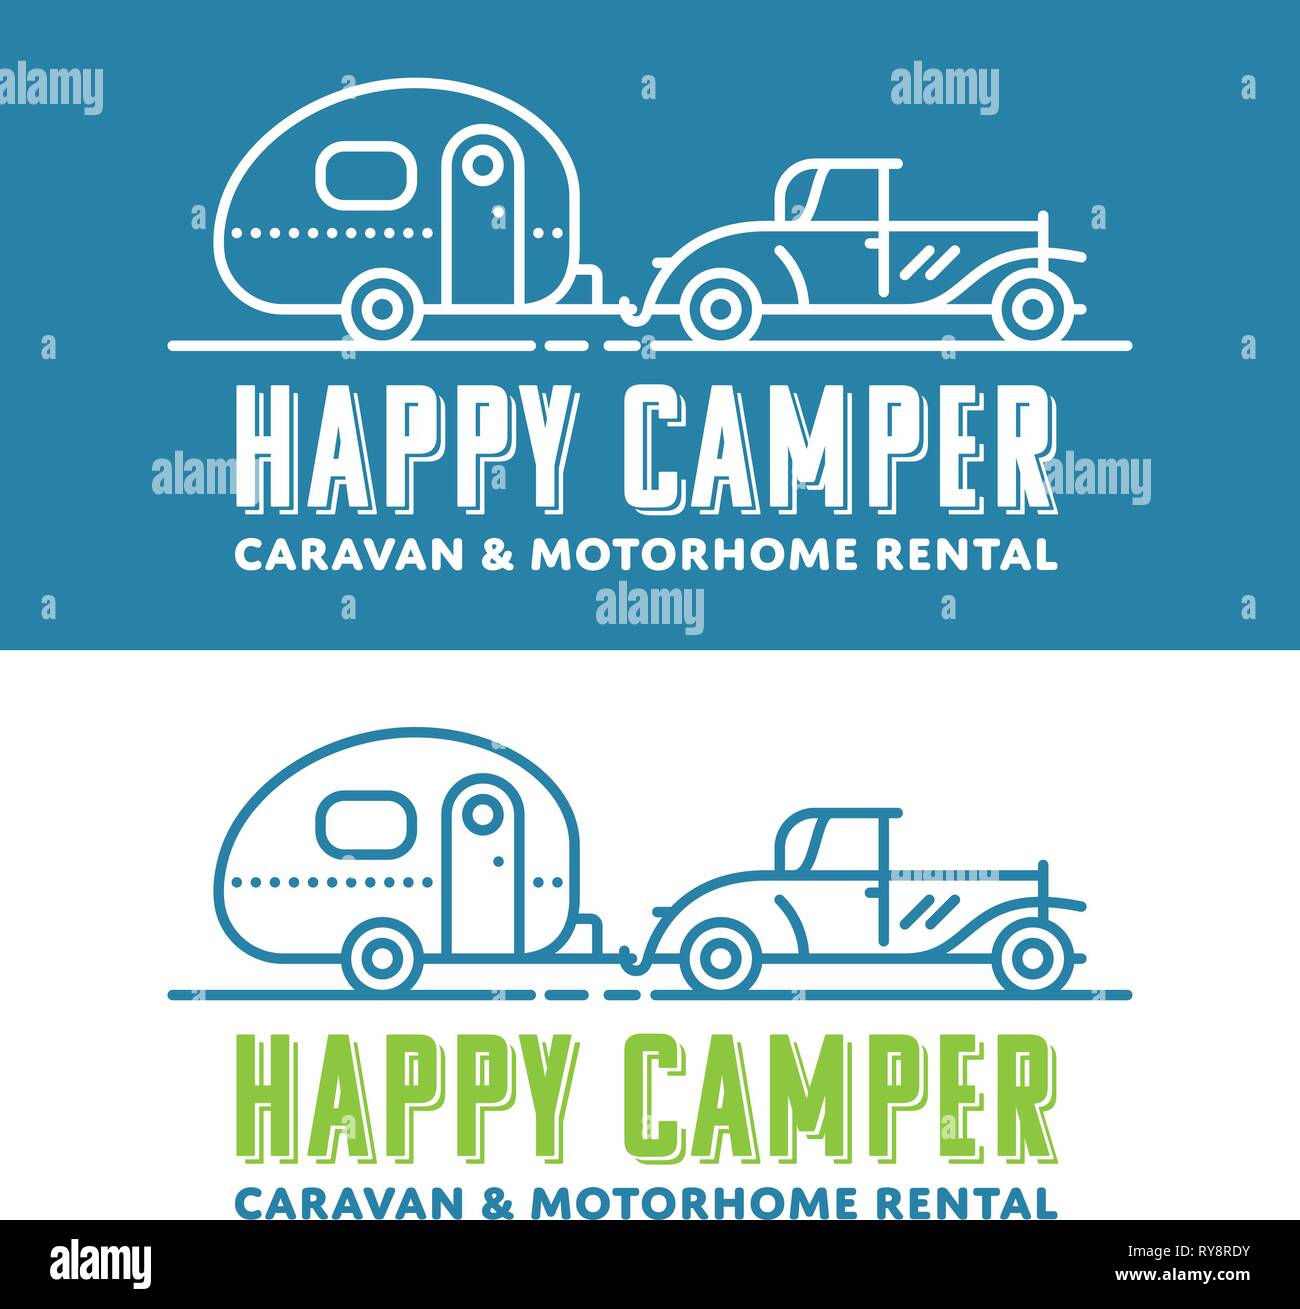 Retro caravaning vector logo template with vintage car and caravan Stock Vector